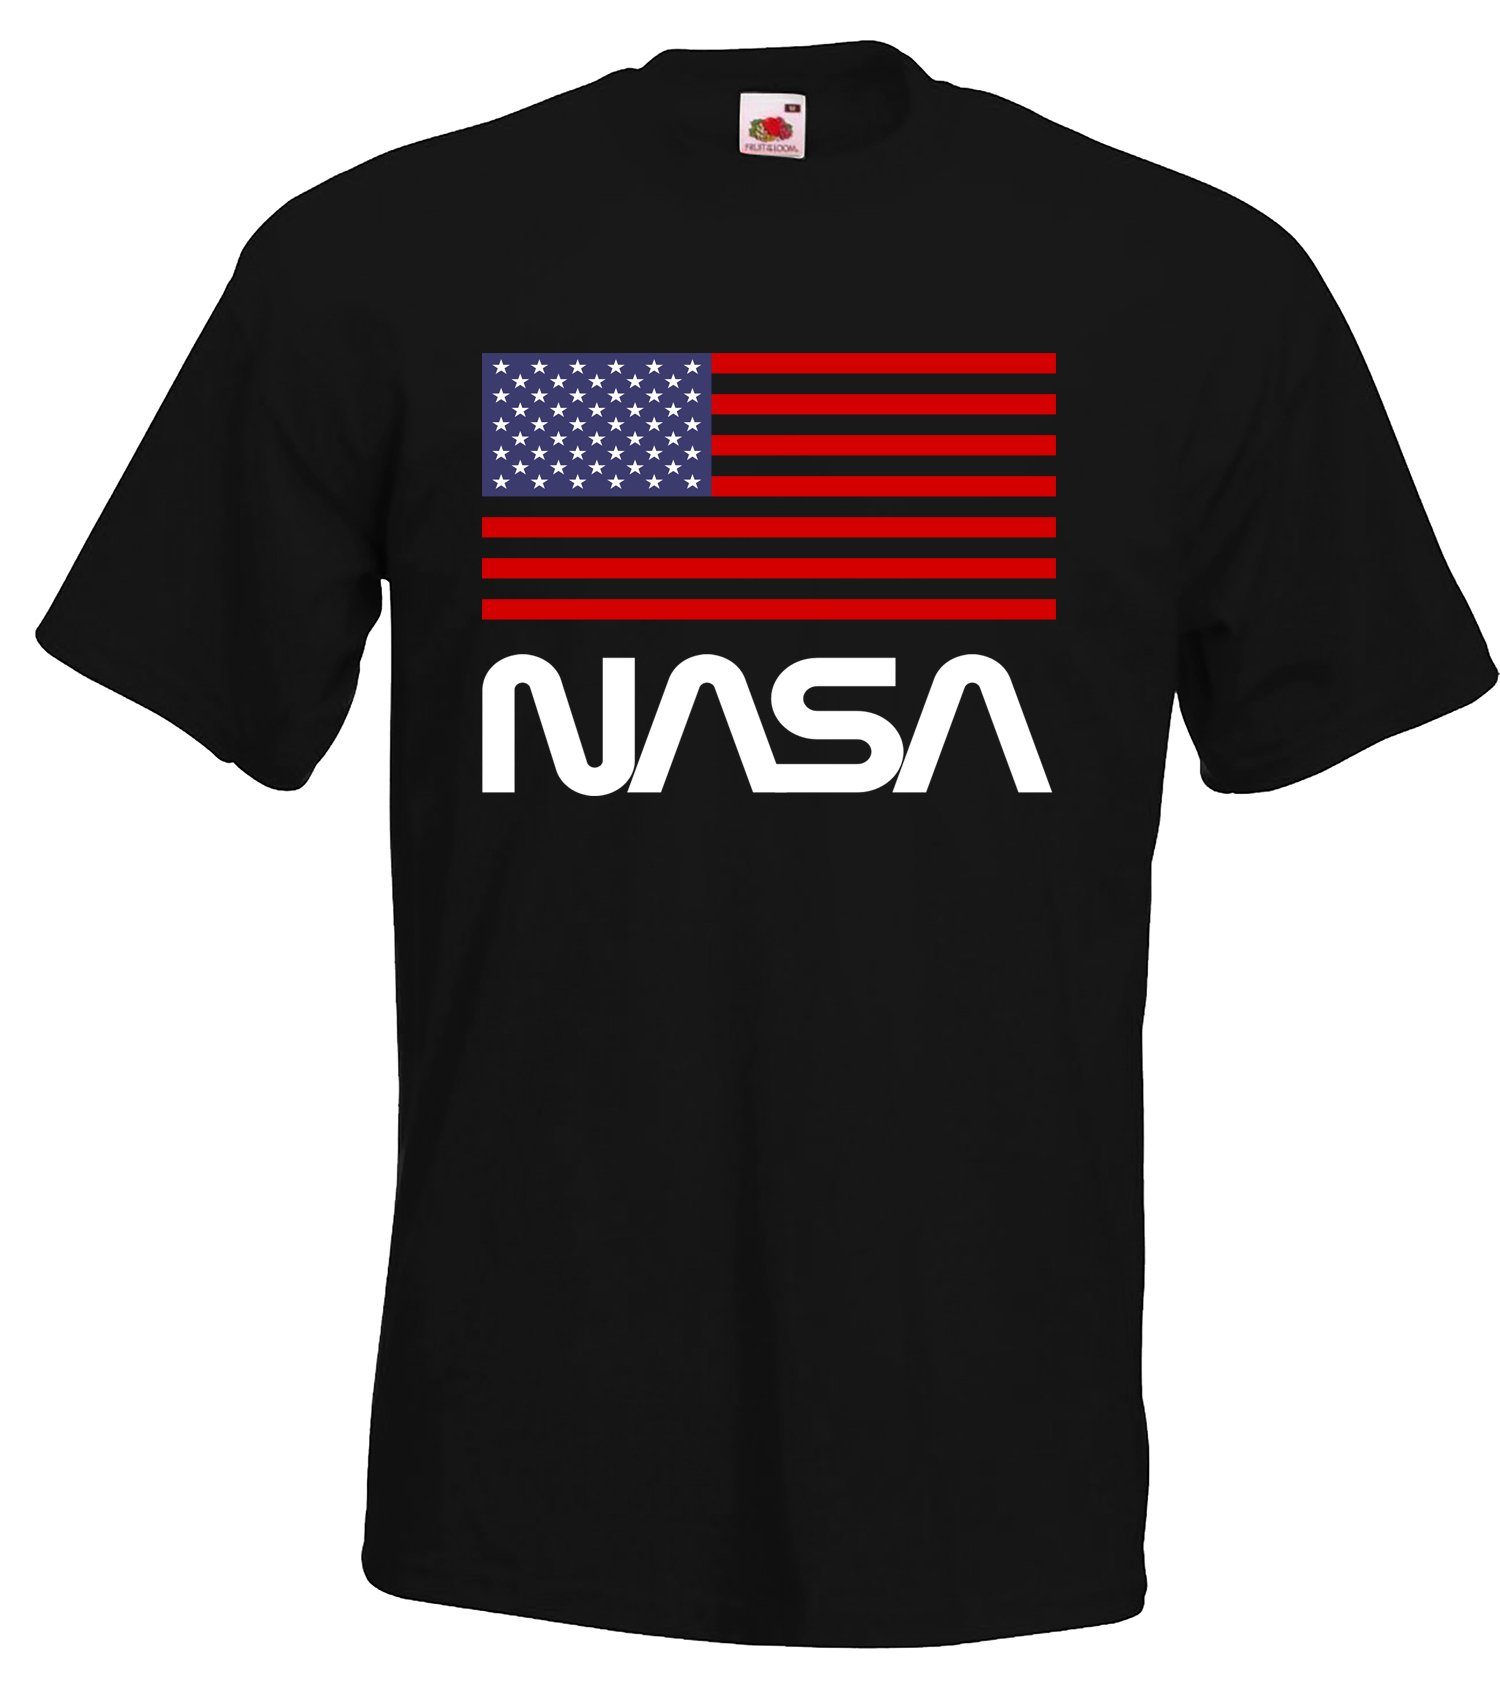 Schwarz USA trendigem Designz mit T-Shirt Frontprint NASA Herren Youth T-Shirt